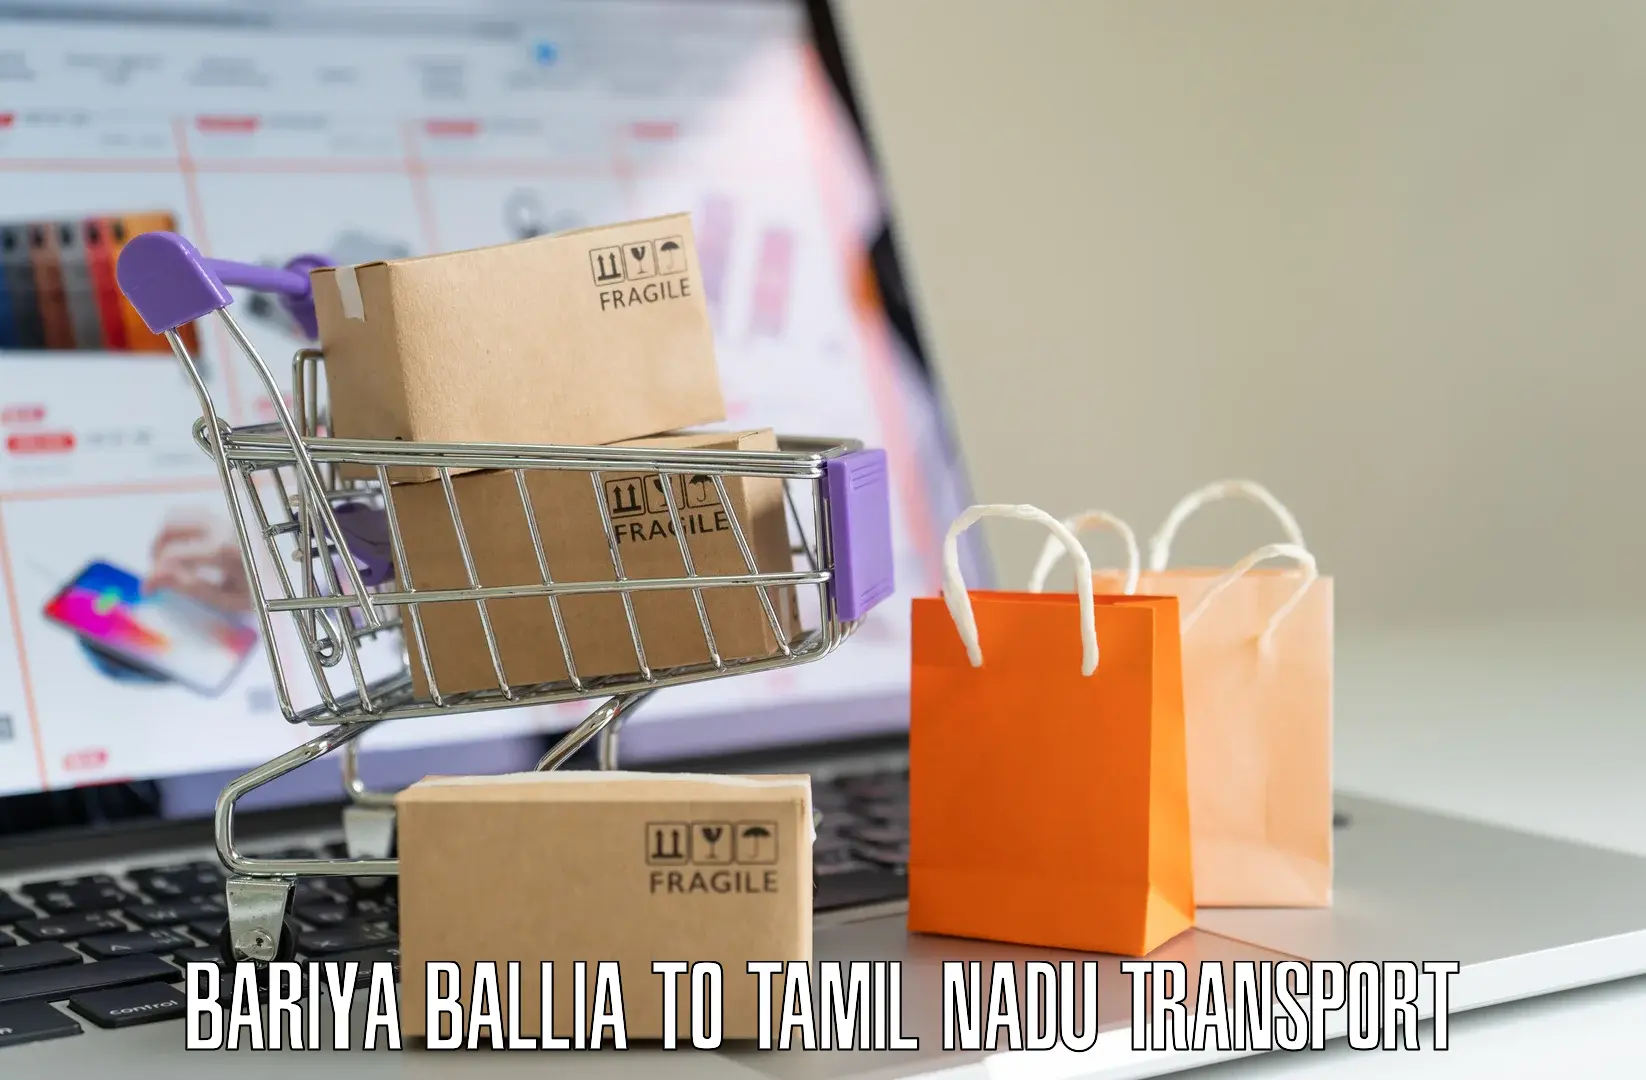 Transport services Bariya Ballia to Kulithalai